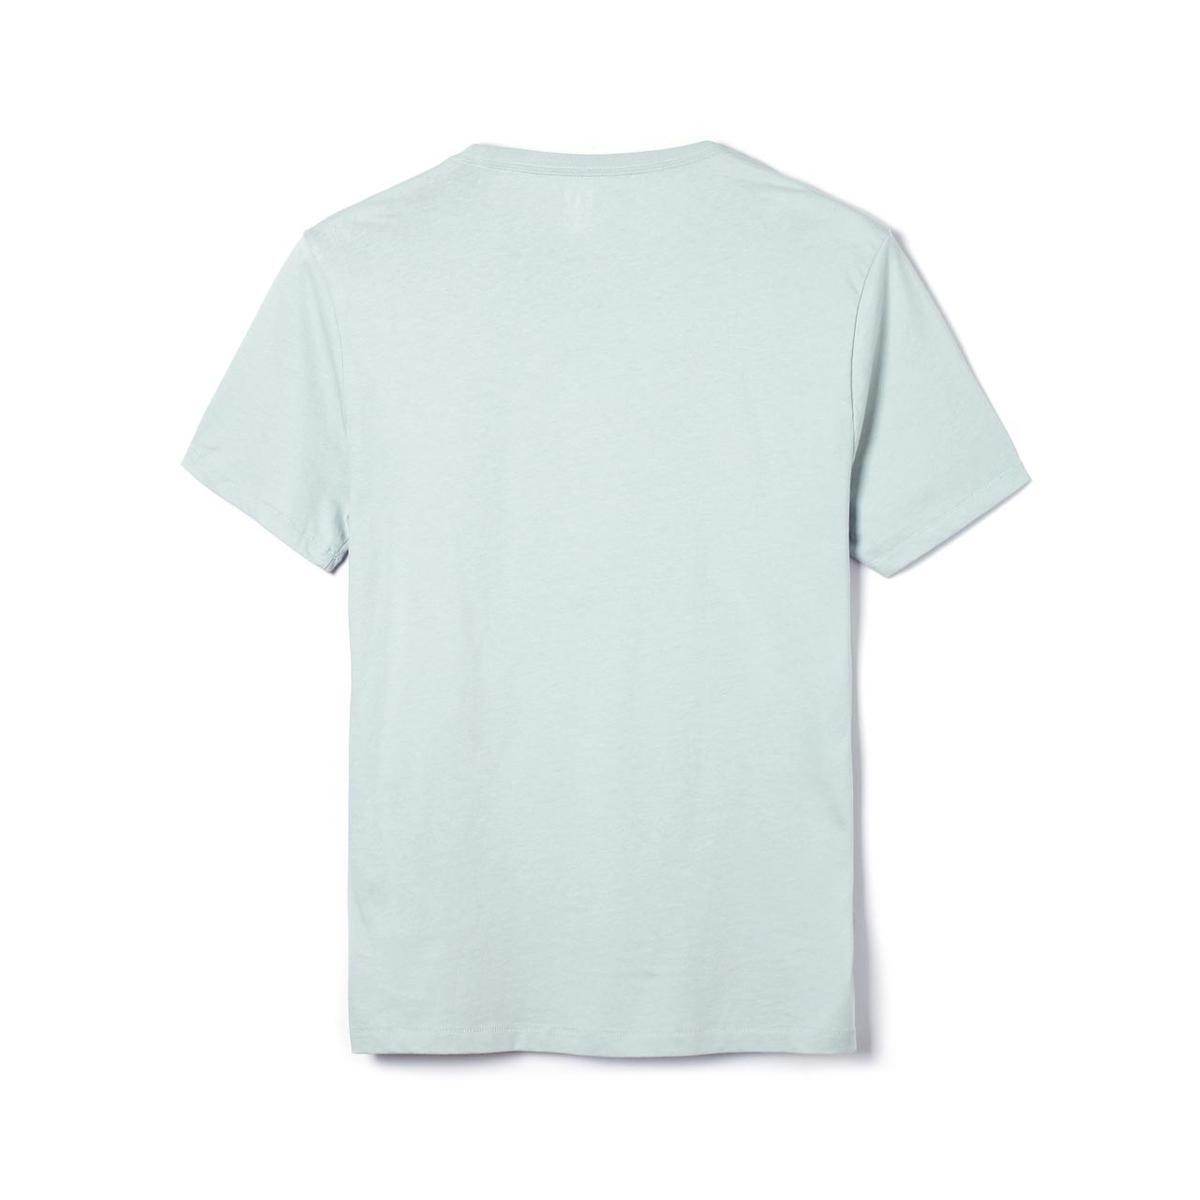 盖璞gap男装logo徽标基本款柔软短袖圆领t恤mist blue